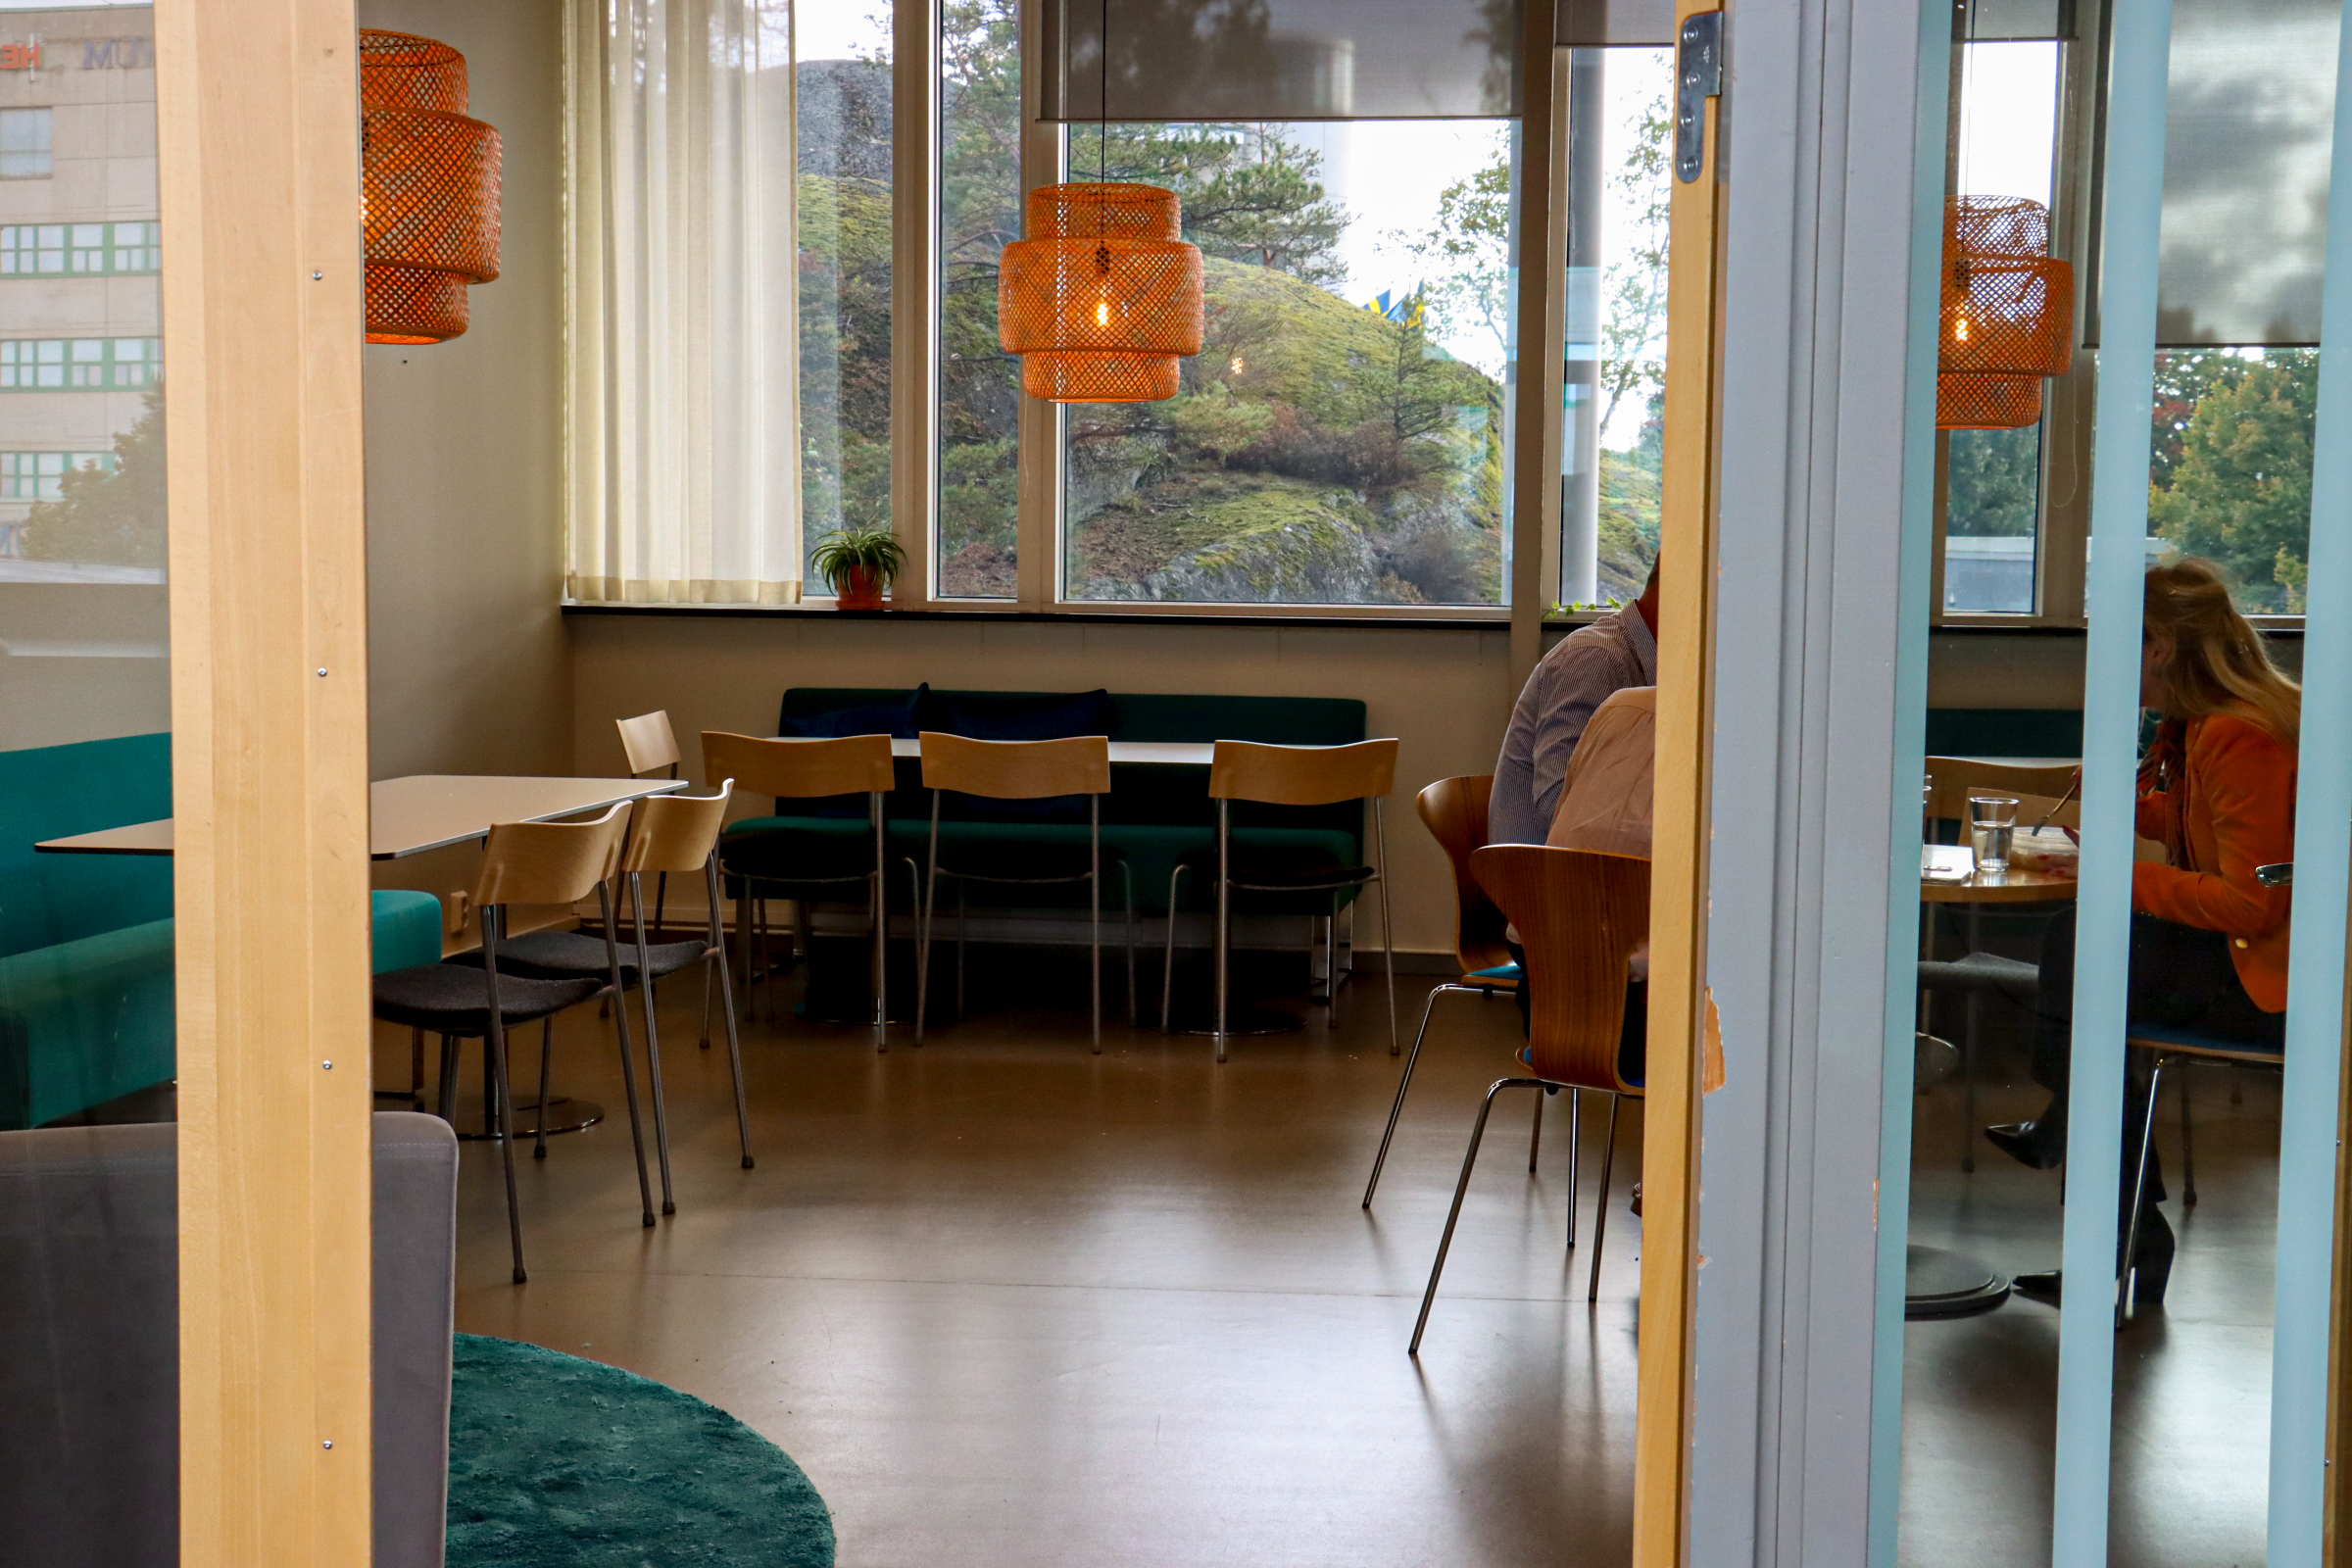 Pentrybild hos Innovation Station Flemingsberg med tre personer som äter lunch och tomma stolar